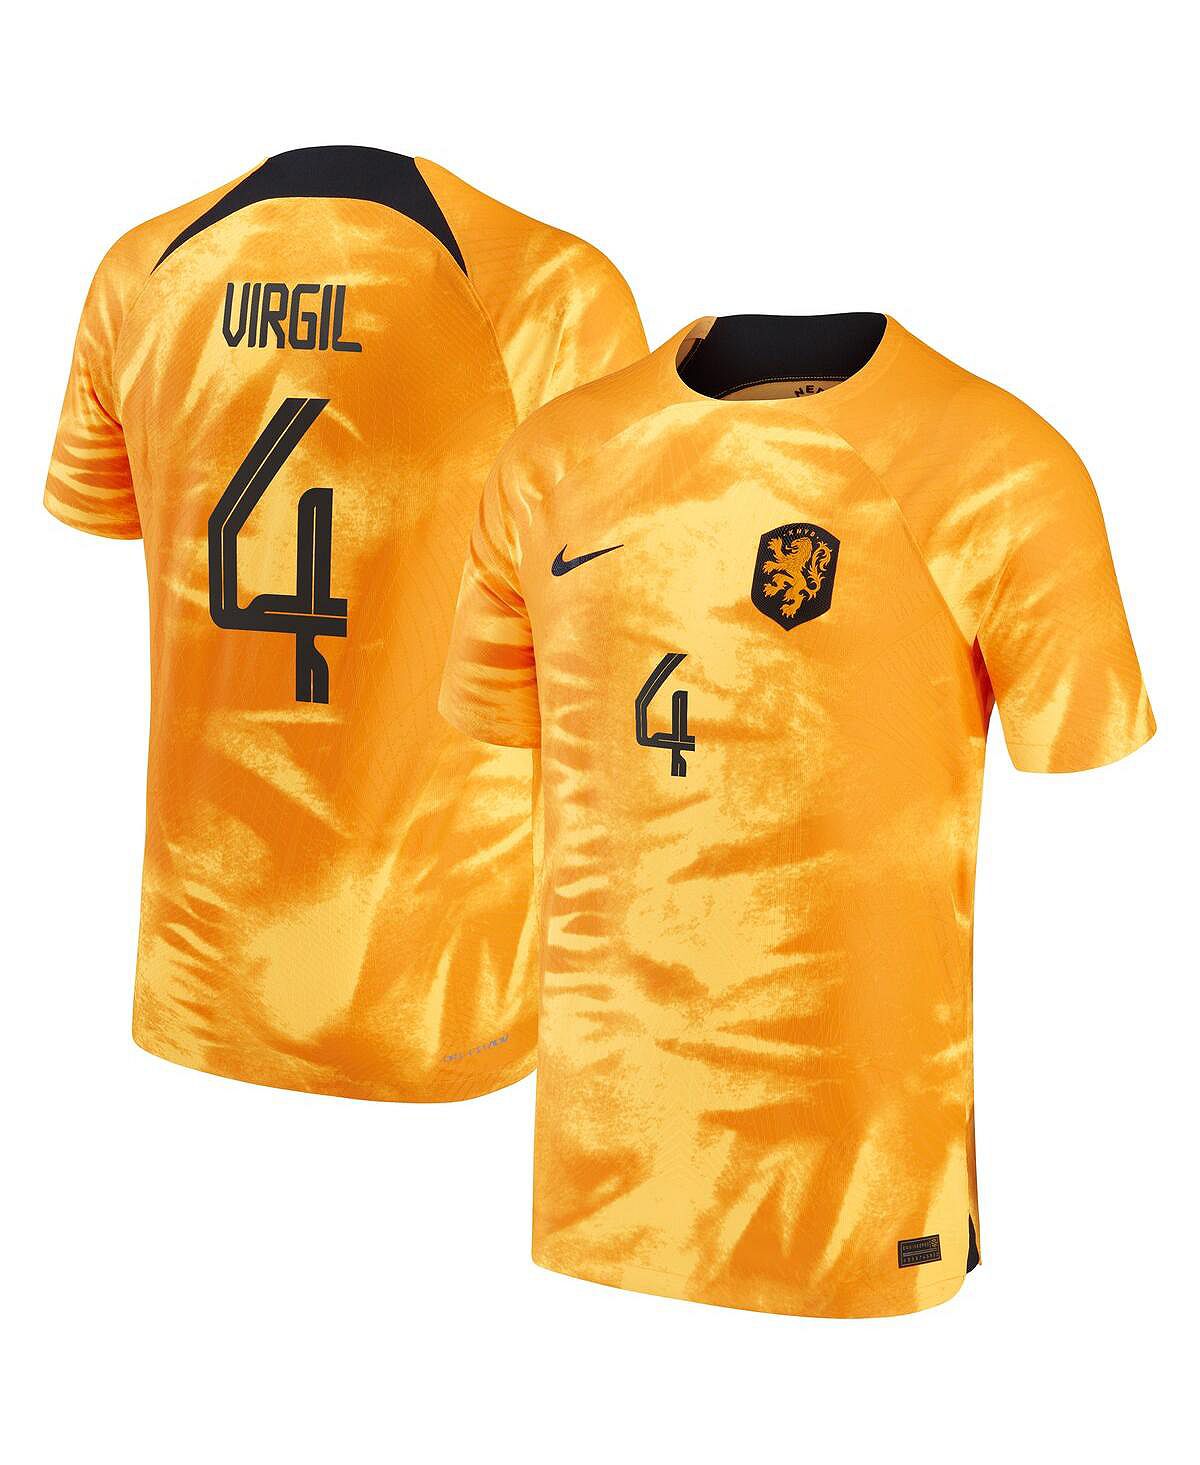 Мужская футболка virgil van dijk orange, сборная нидерландов 2022/23 home vapor match, аутентичная футболка игрока Nike virgil